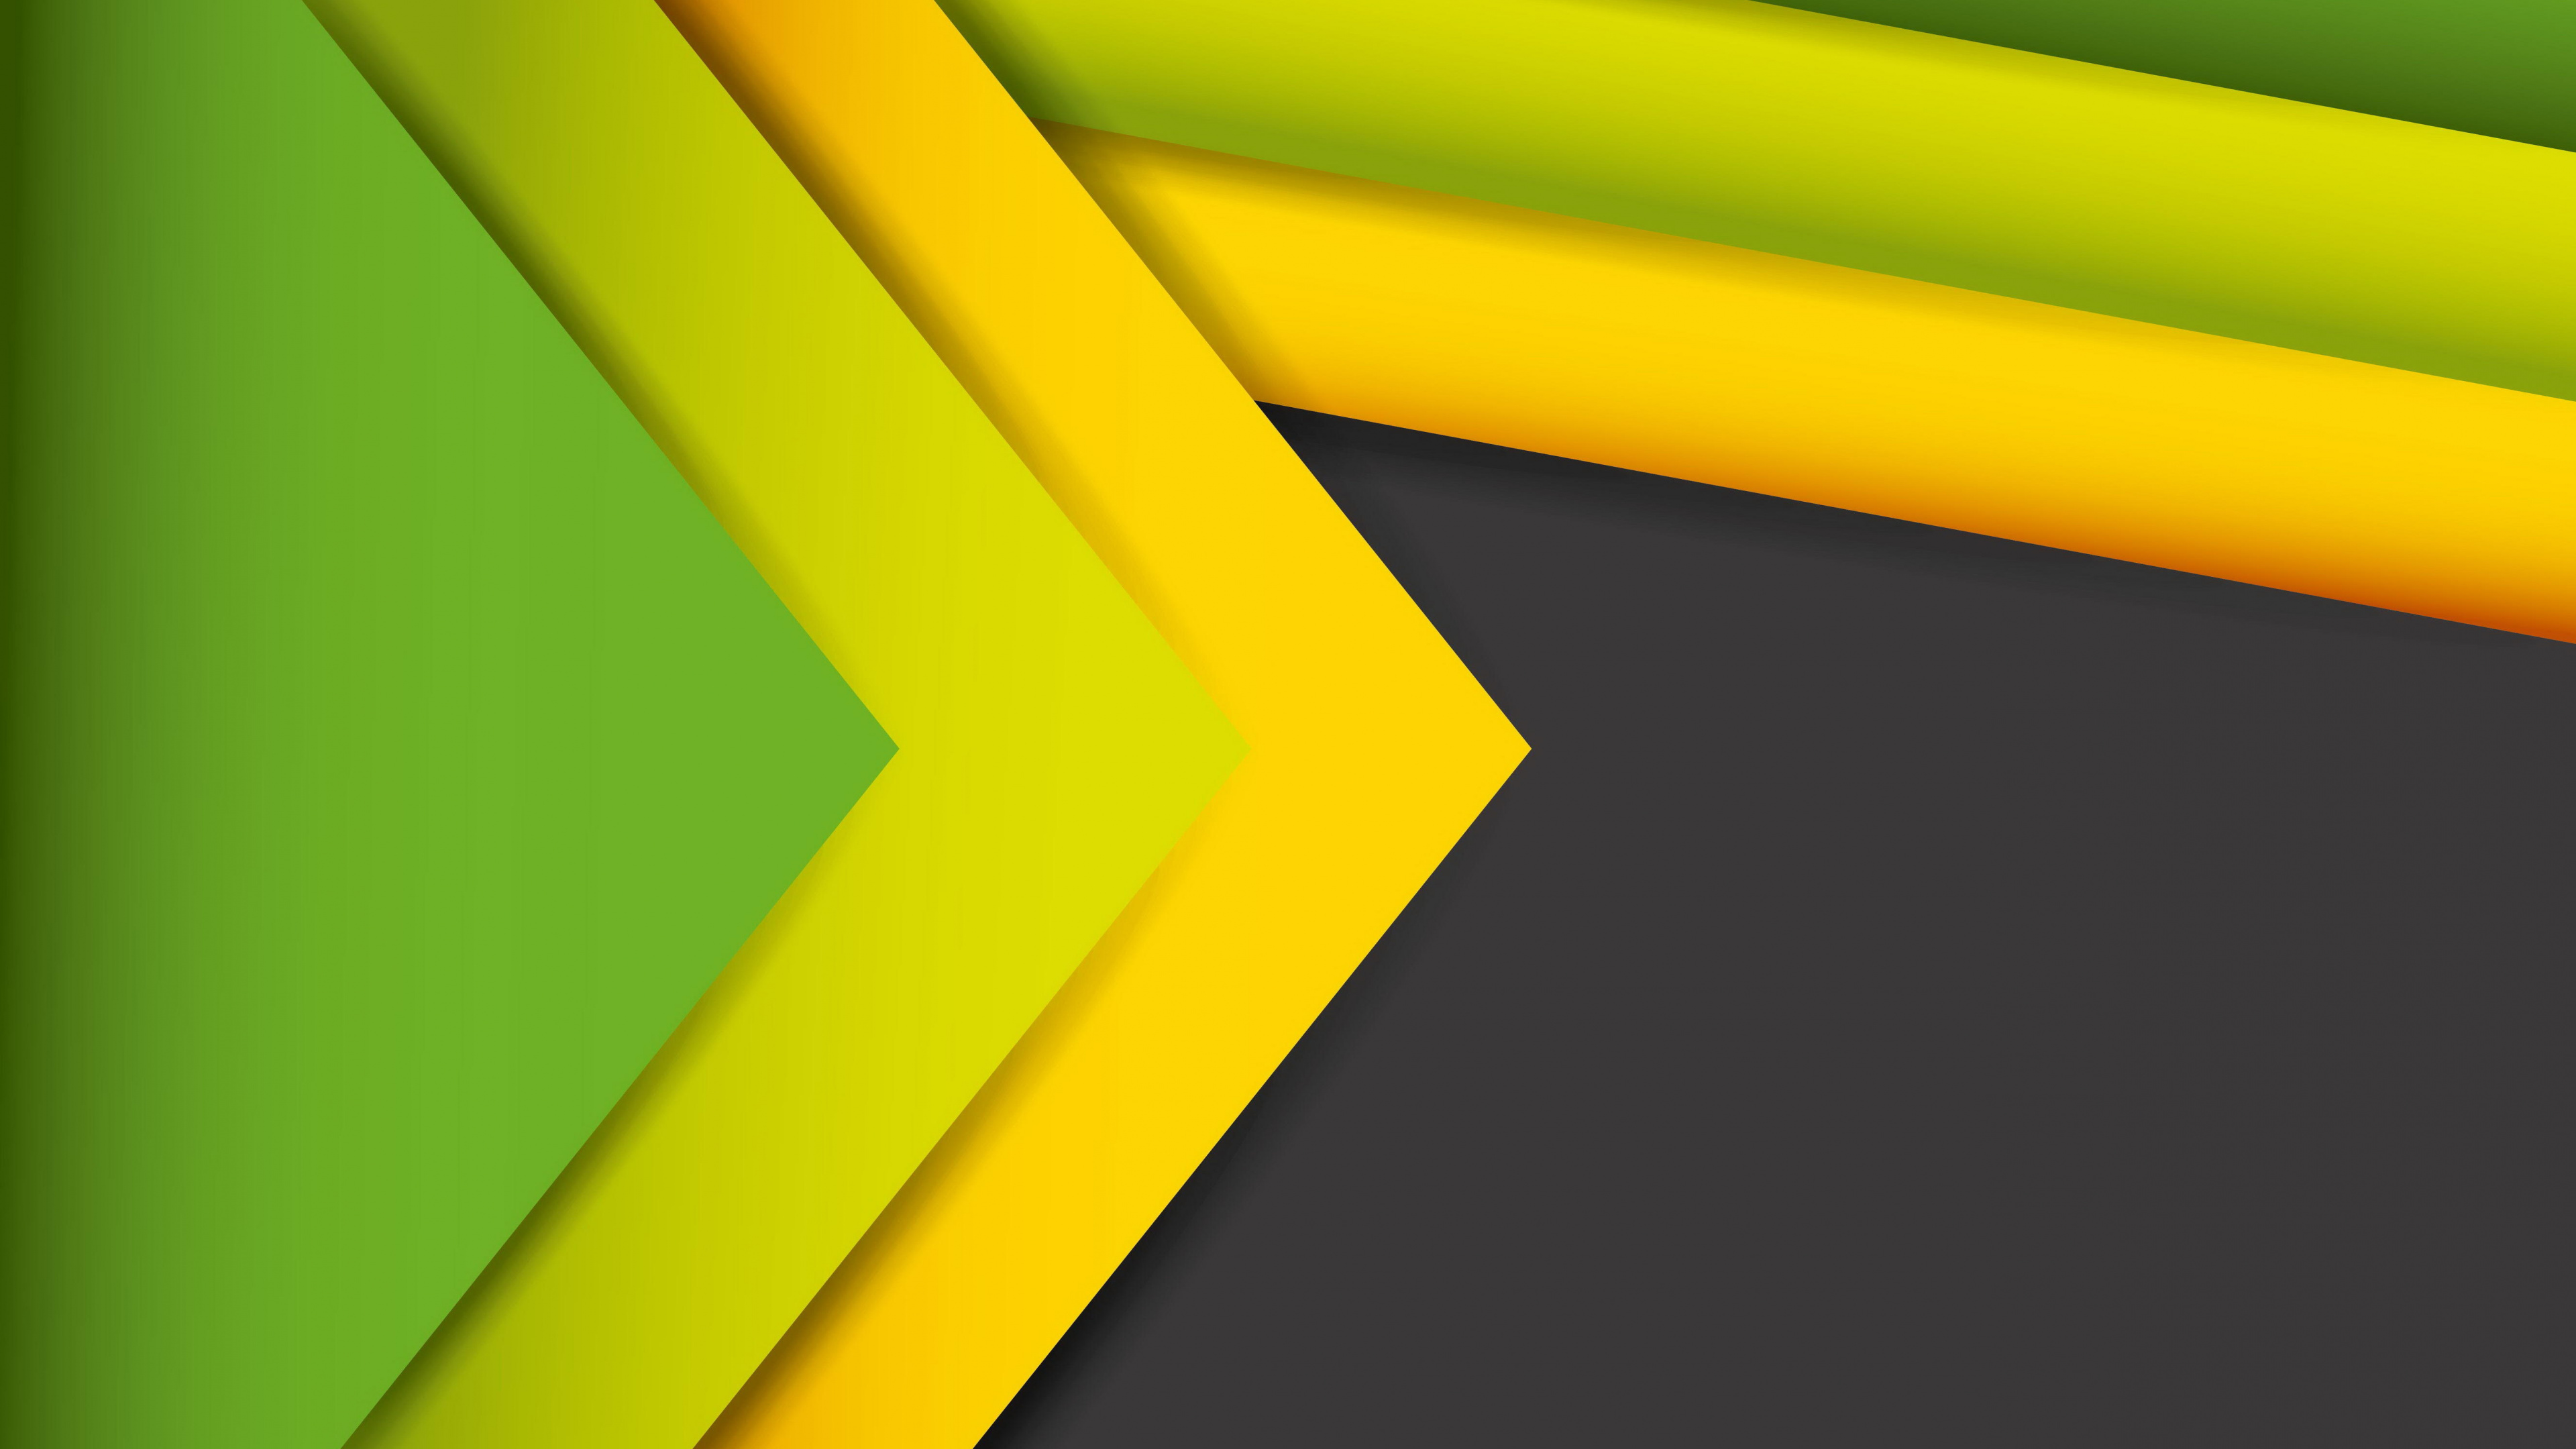 抽象艺术, 绿色的, 黄色的, 对称, 图形设计 壁纸 3840x2160 允许